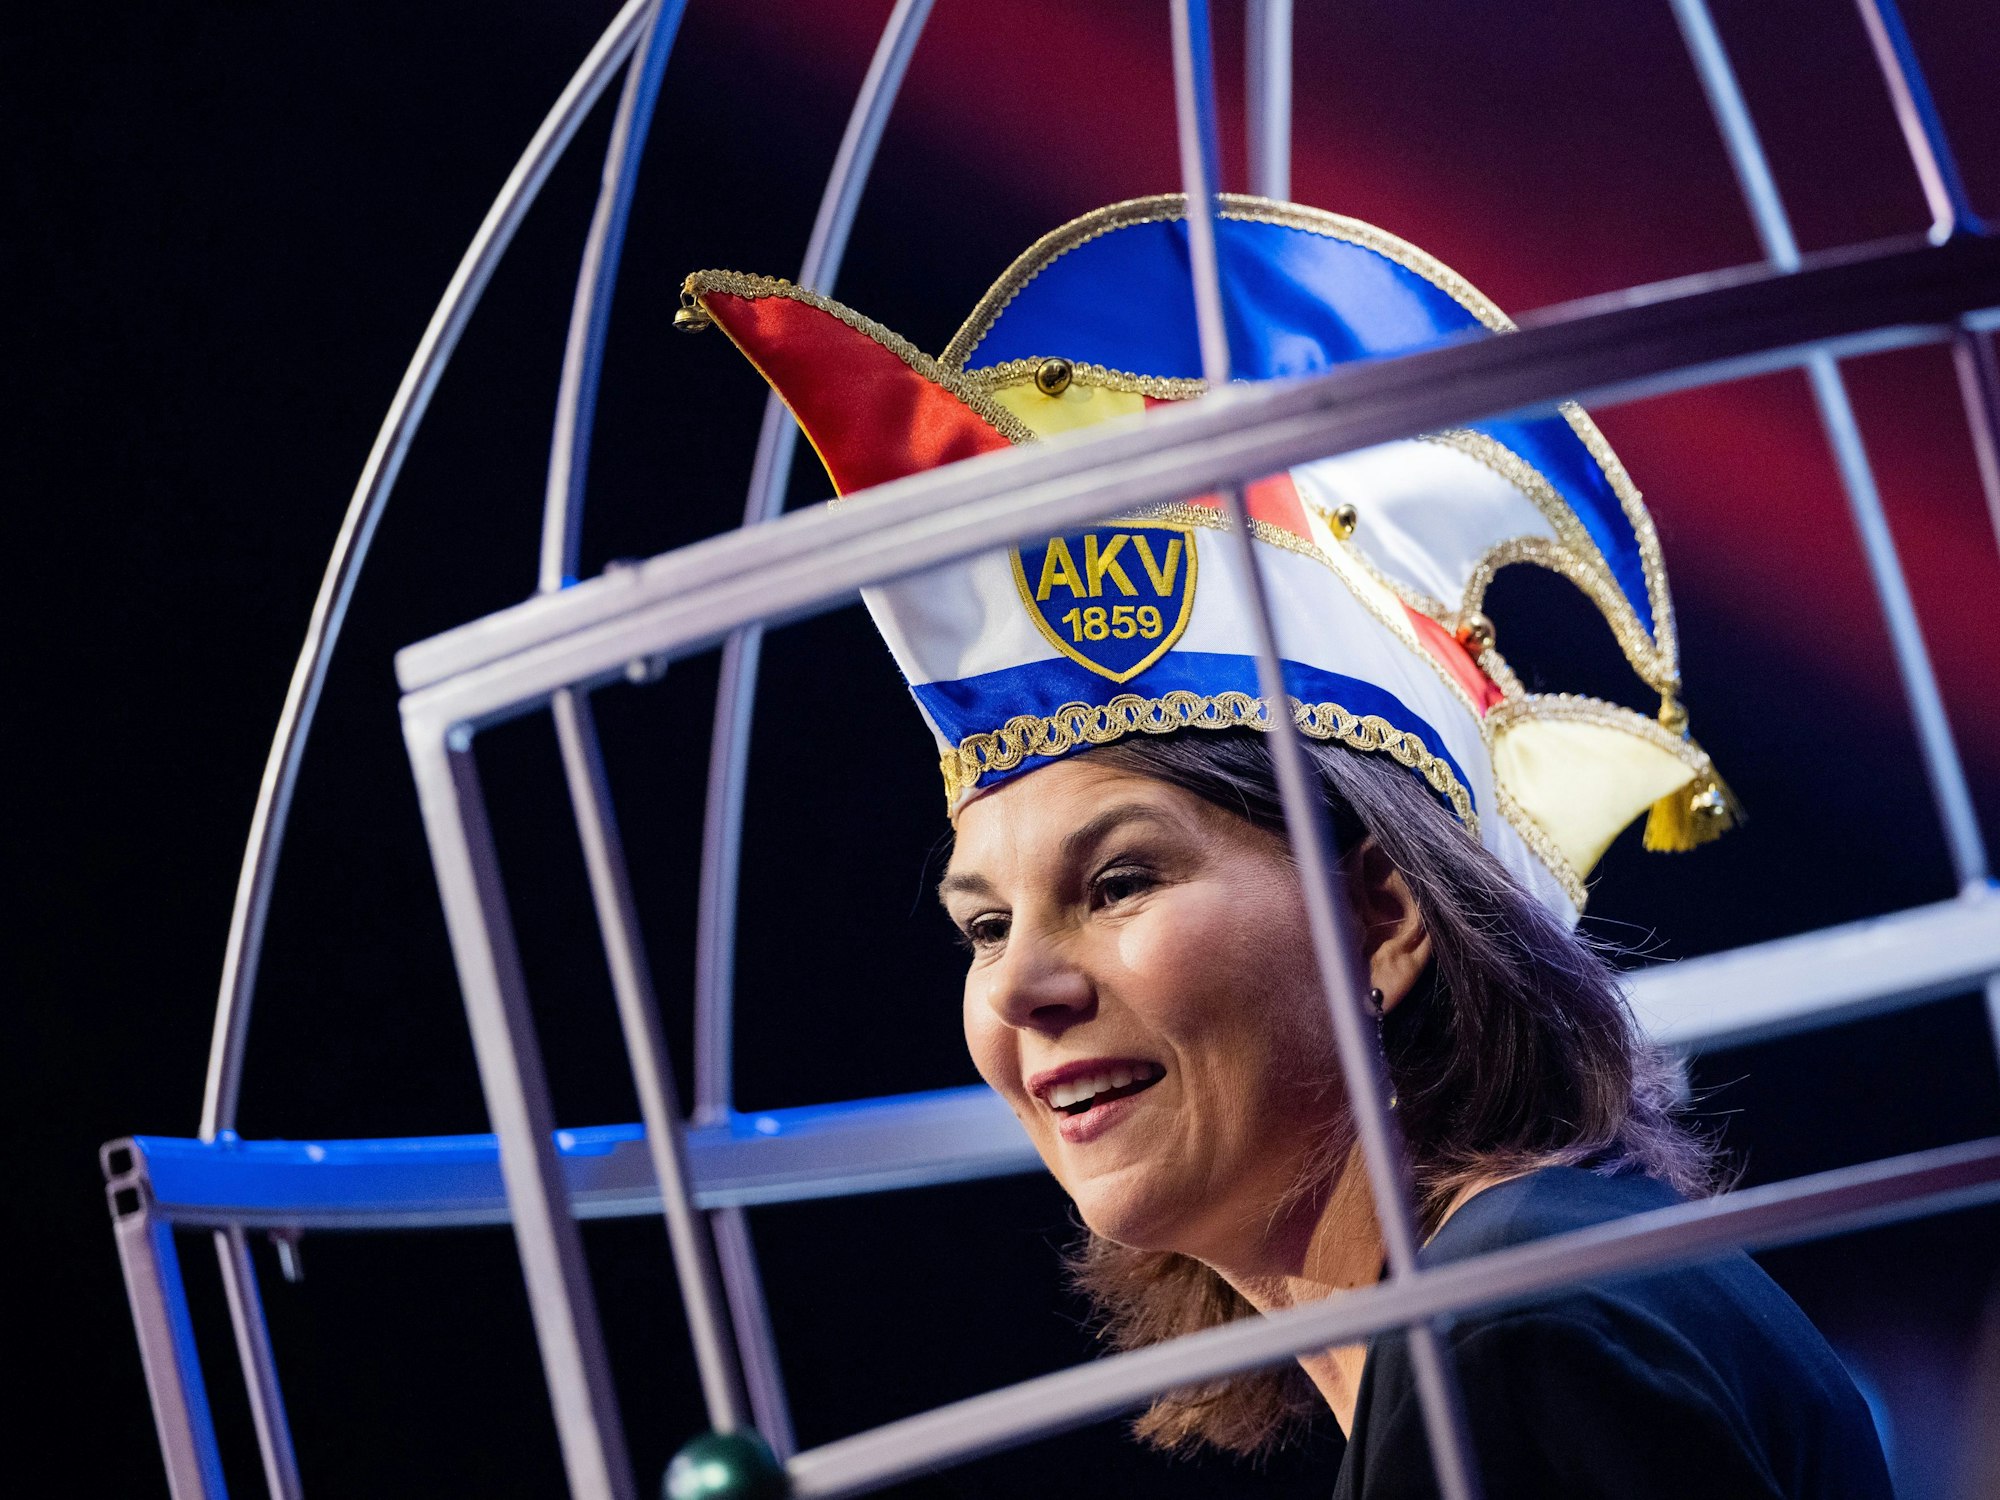 Außenministerin Annalena Baerbock hält am 5. Februar 2023 ihre Ritterinnenrede bei der Festsitzung zur Verleihung des „Orden wider den tierischen Ernst“ des Aachener Karnevalsvereins (AKV).